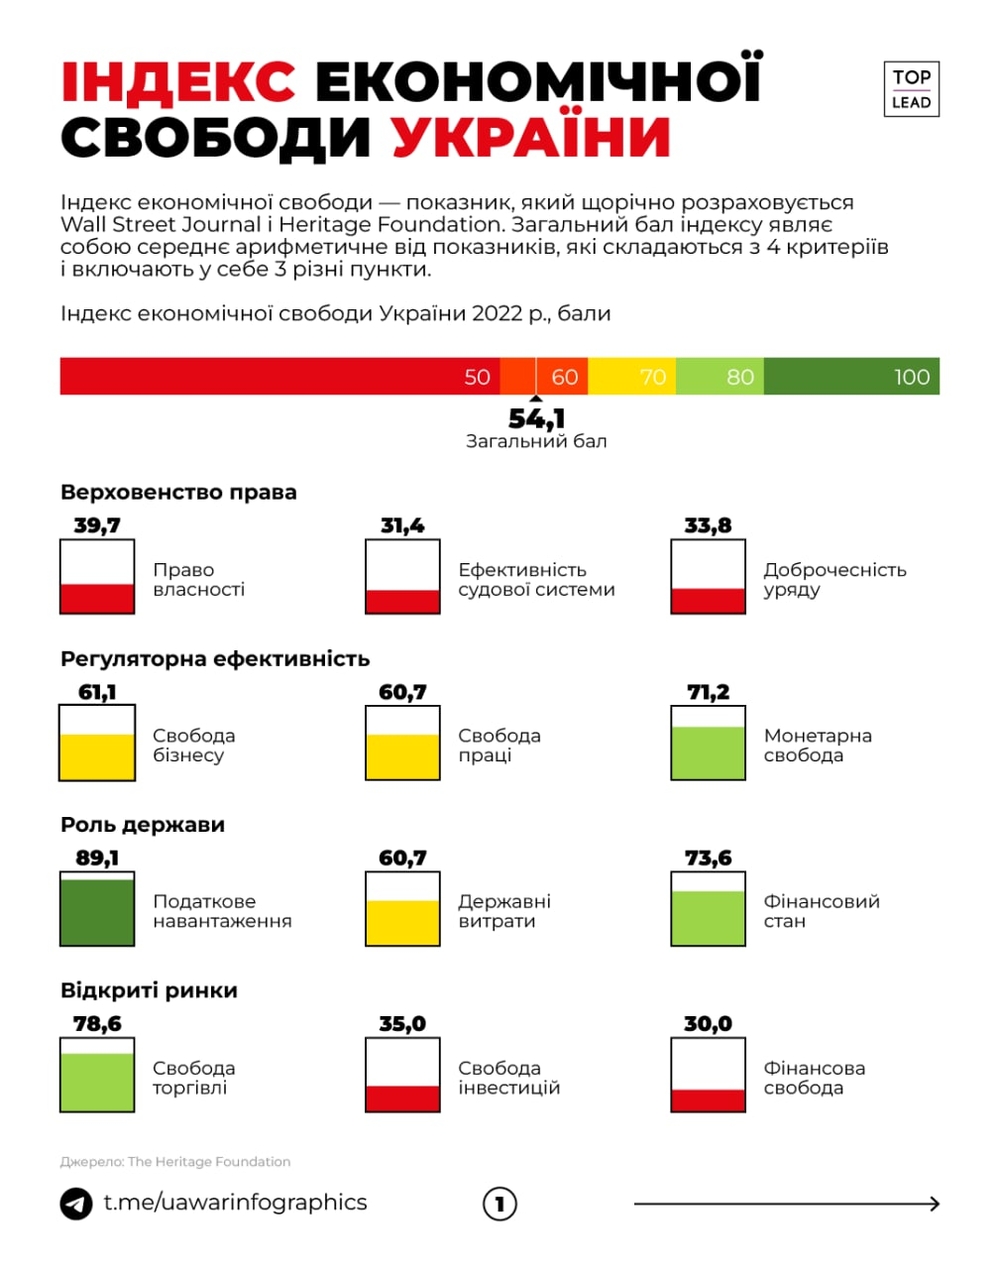 Україна в рейтингу економічної свободи 